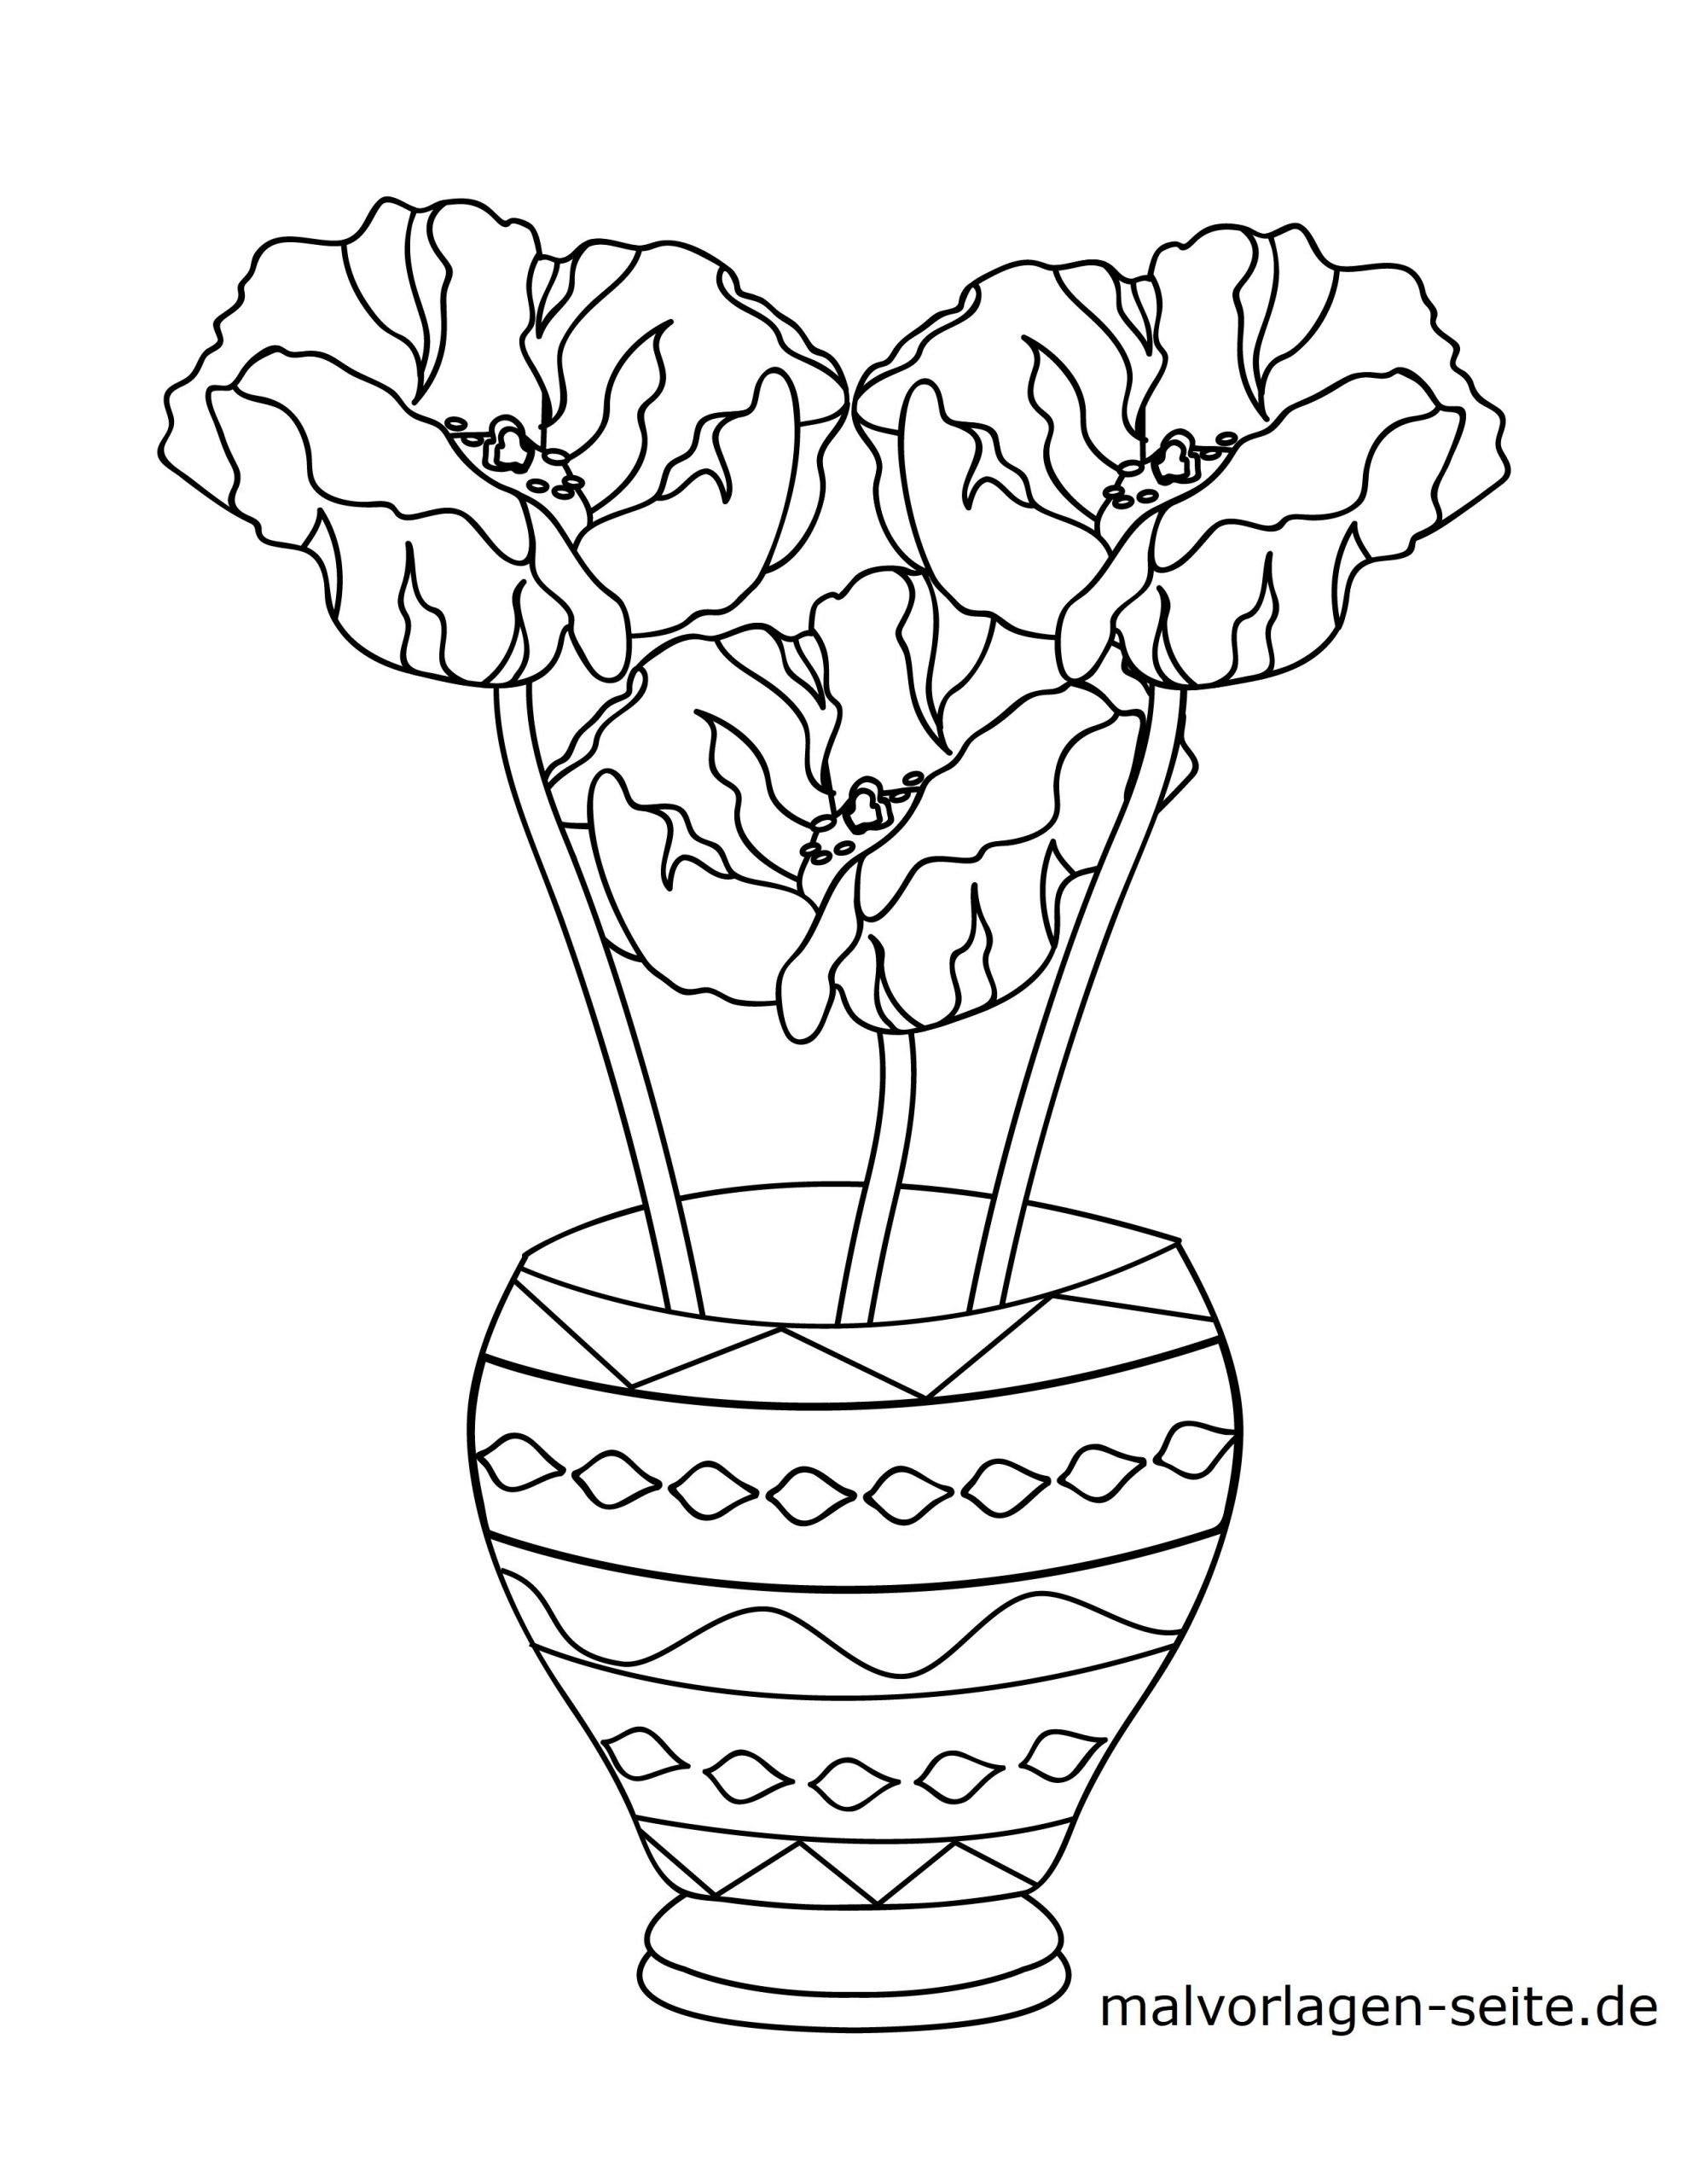 Malvorlage Blumen In Einer Vase - Kostenlose Ausmalbilder verwandt mit Kostenlose Ausmalbilder Blumen